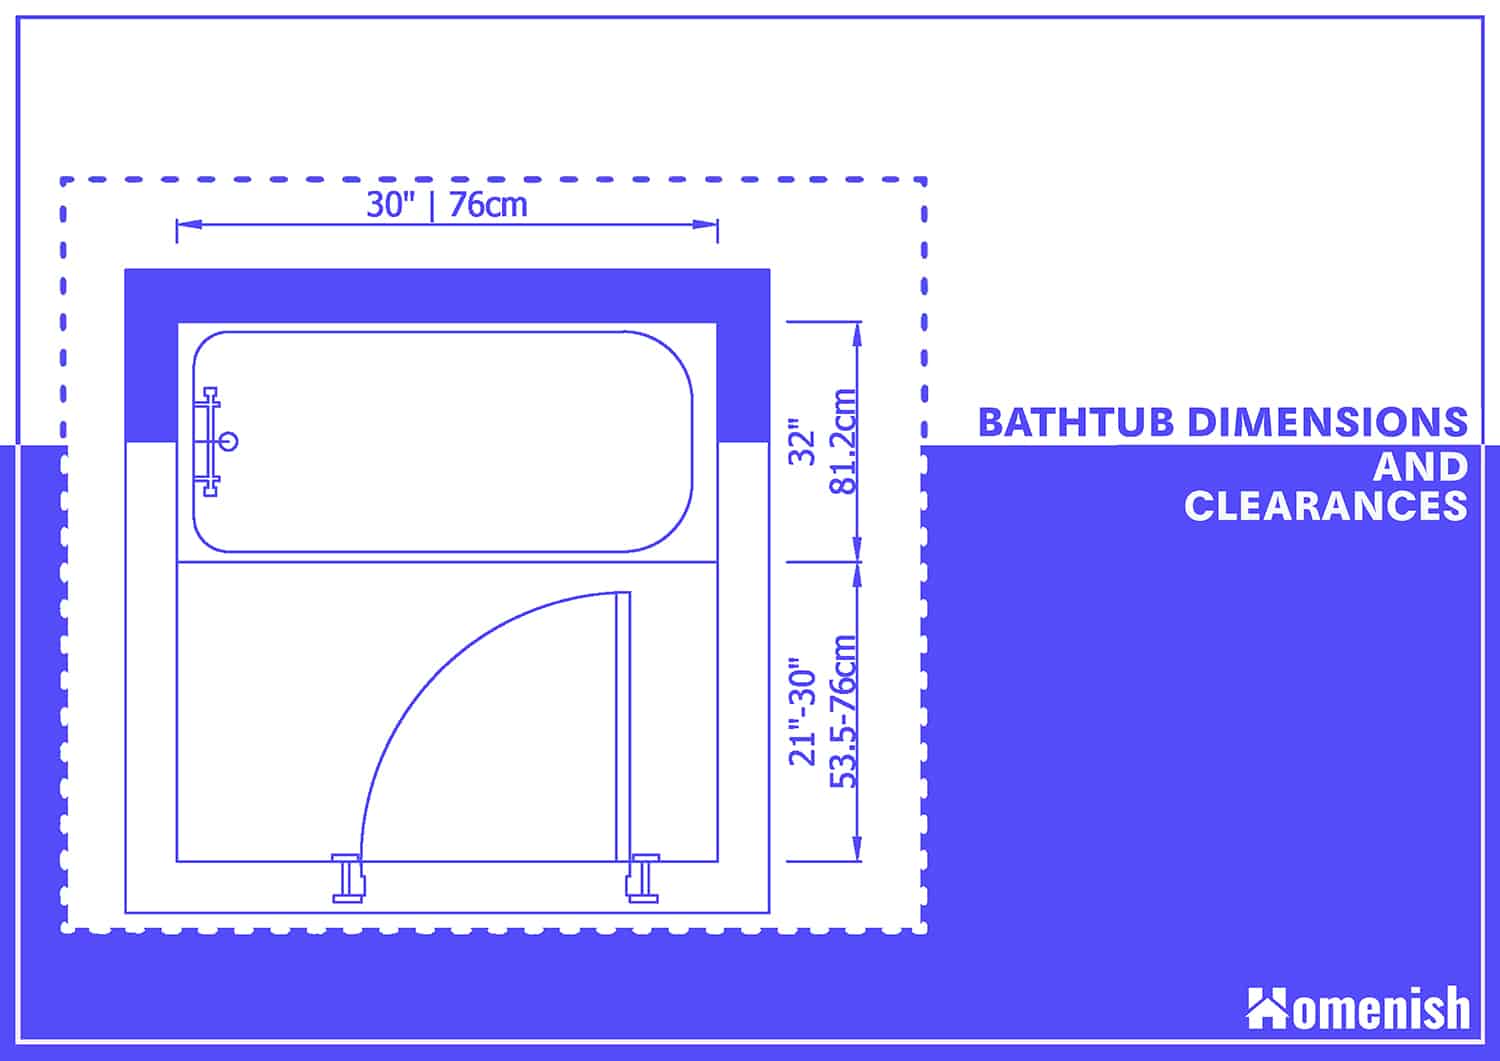 標準浴缸尺寸和間隙